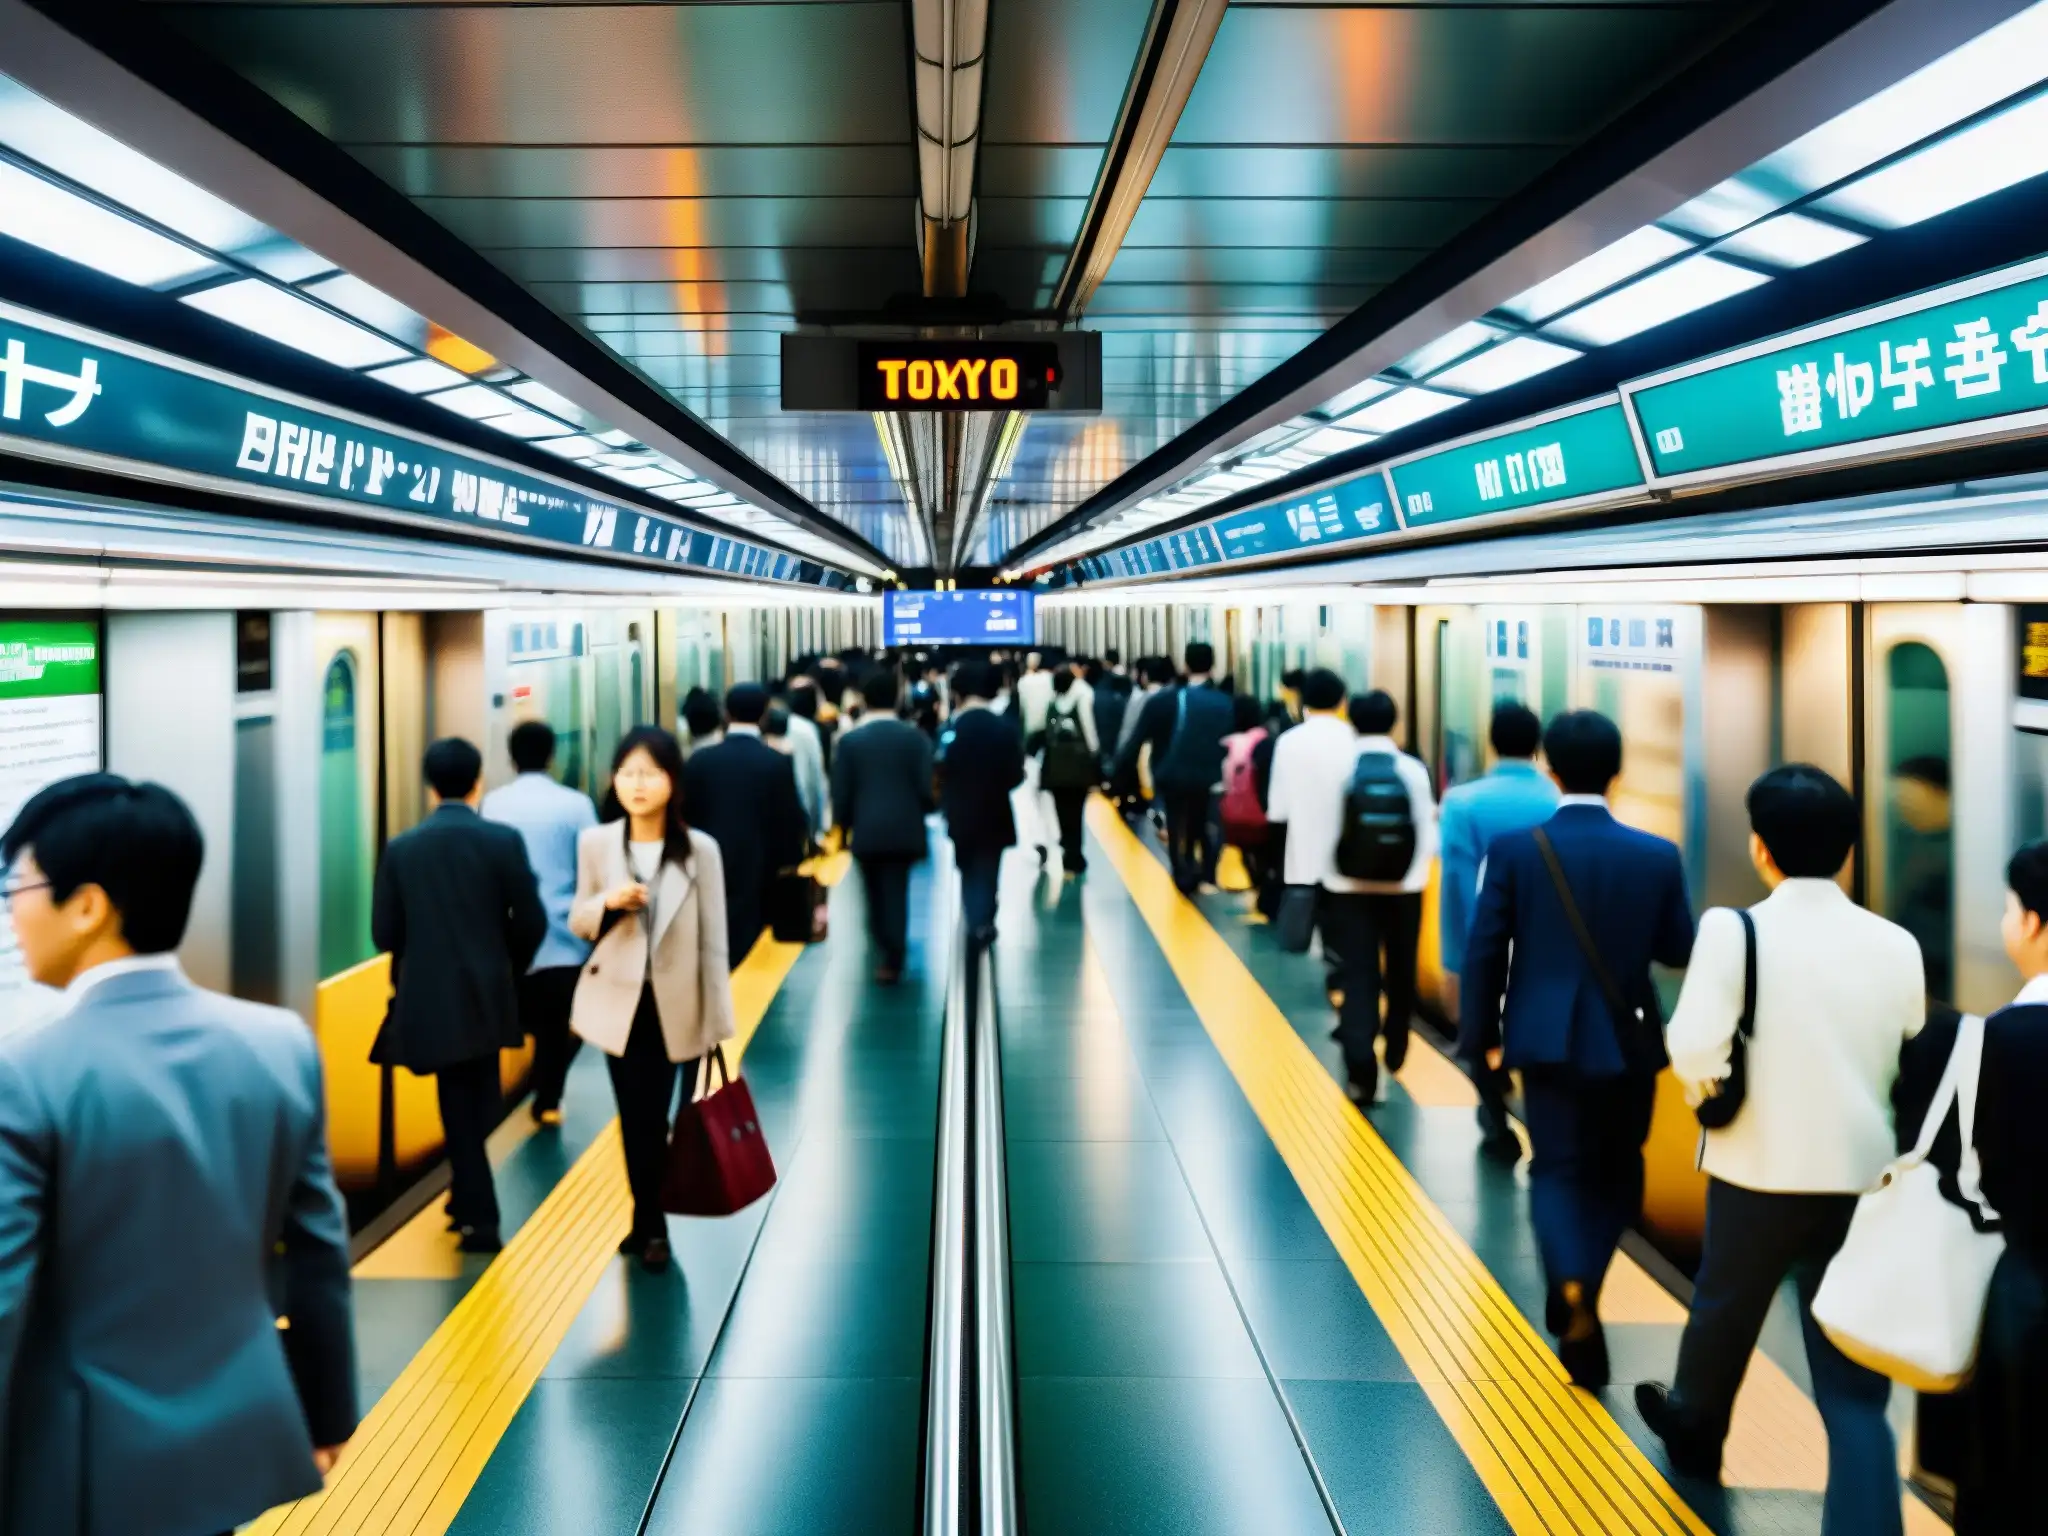 Un mar de viajeros se mueve en el bullicioso metro de Tokio, rodeado de la misteriosa arquitectura y señalética distintiva